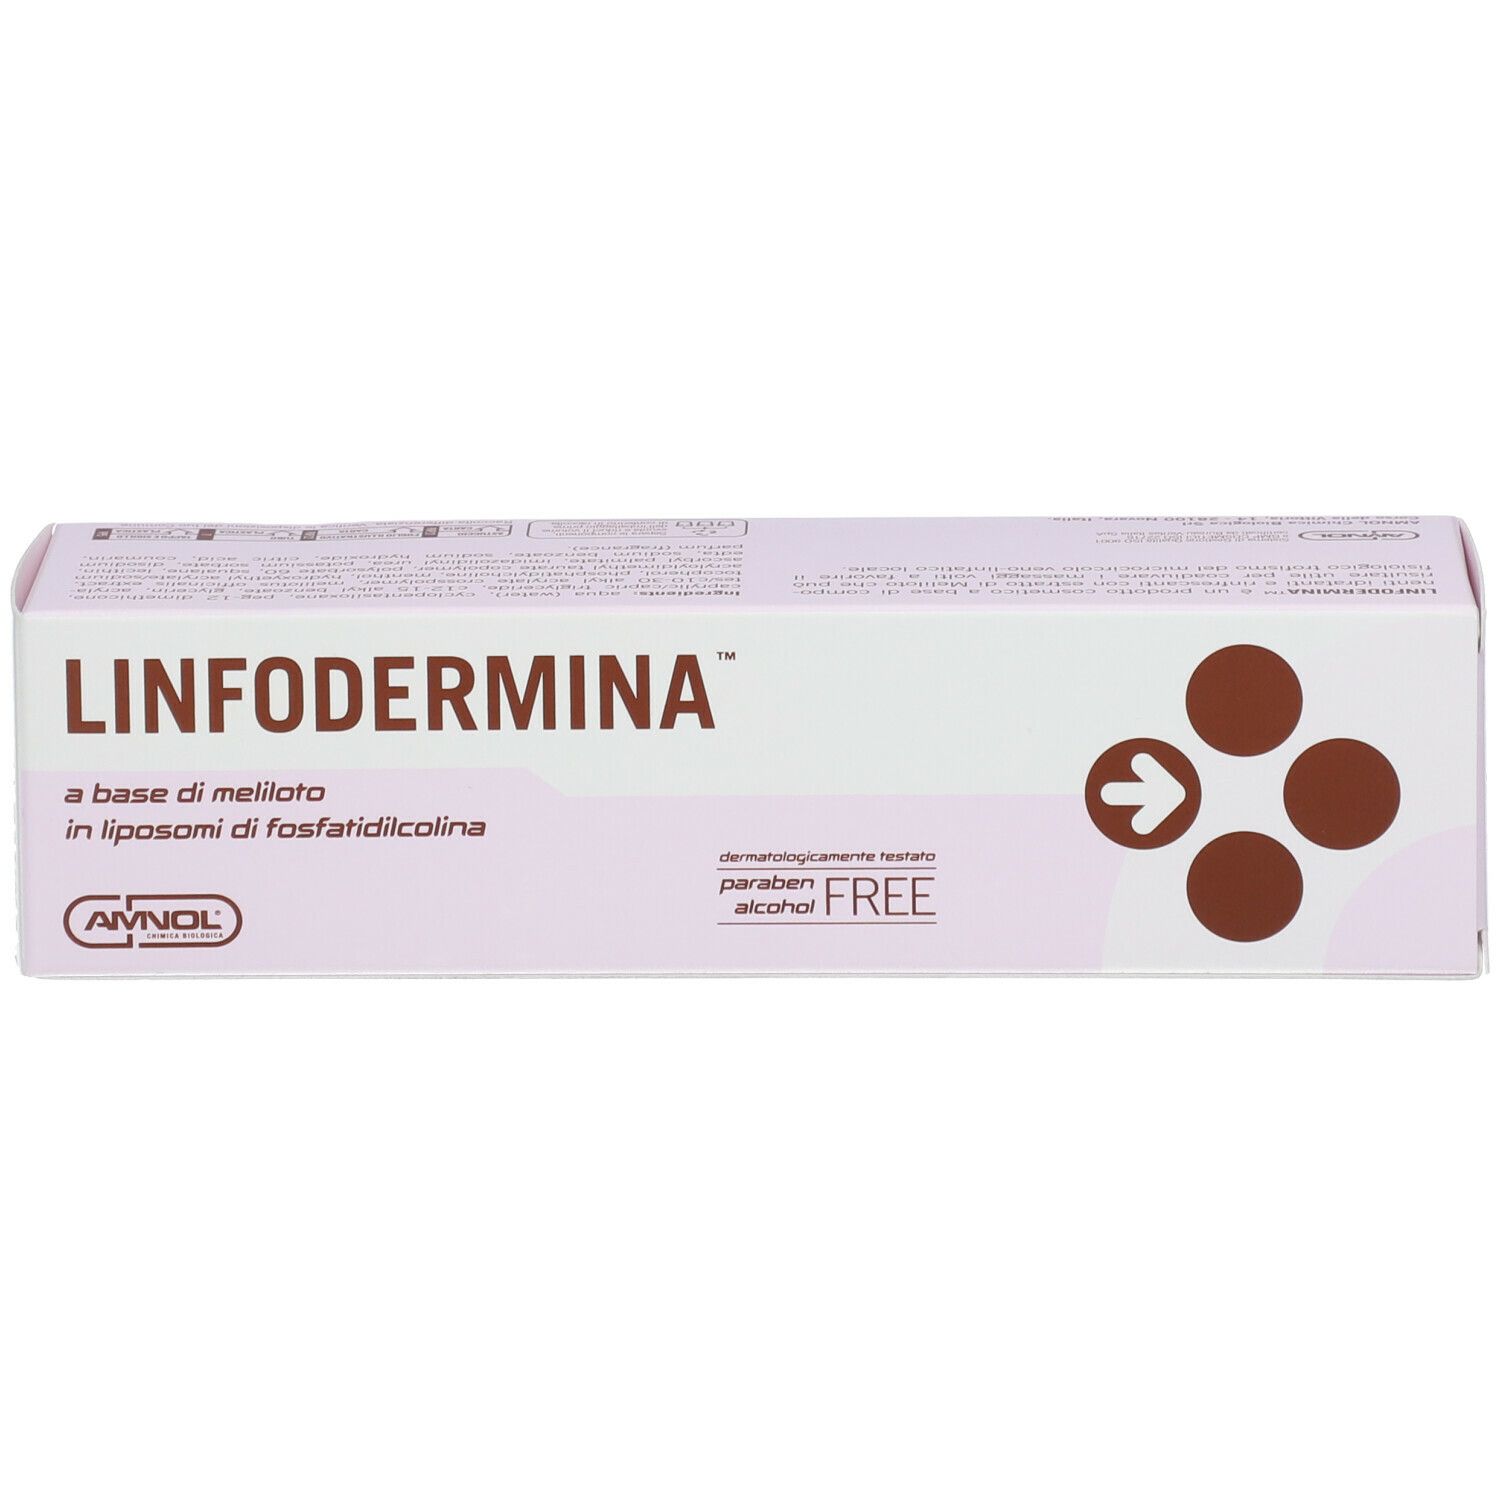 LINFODERMINA™